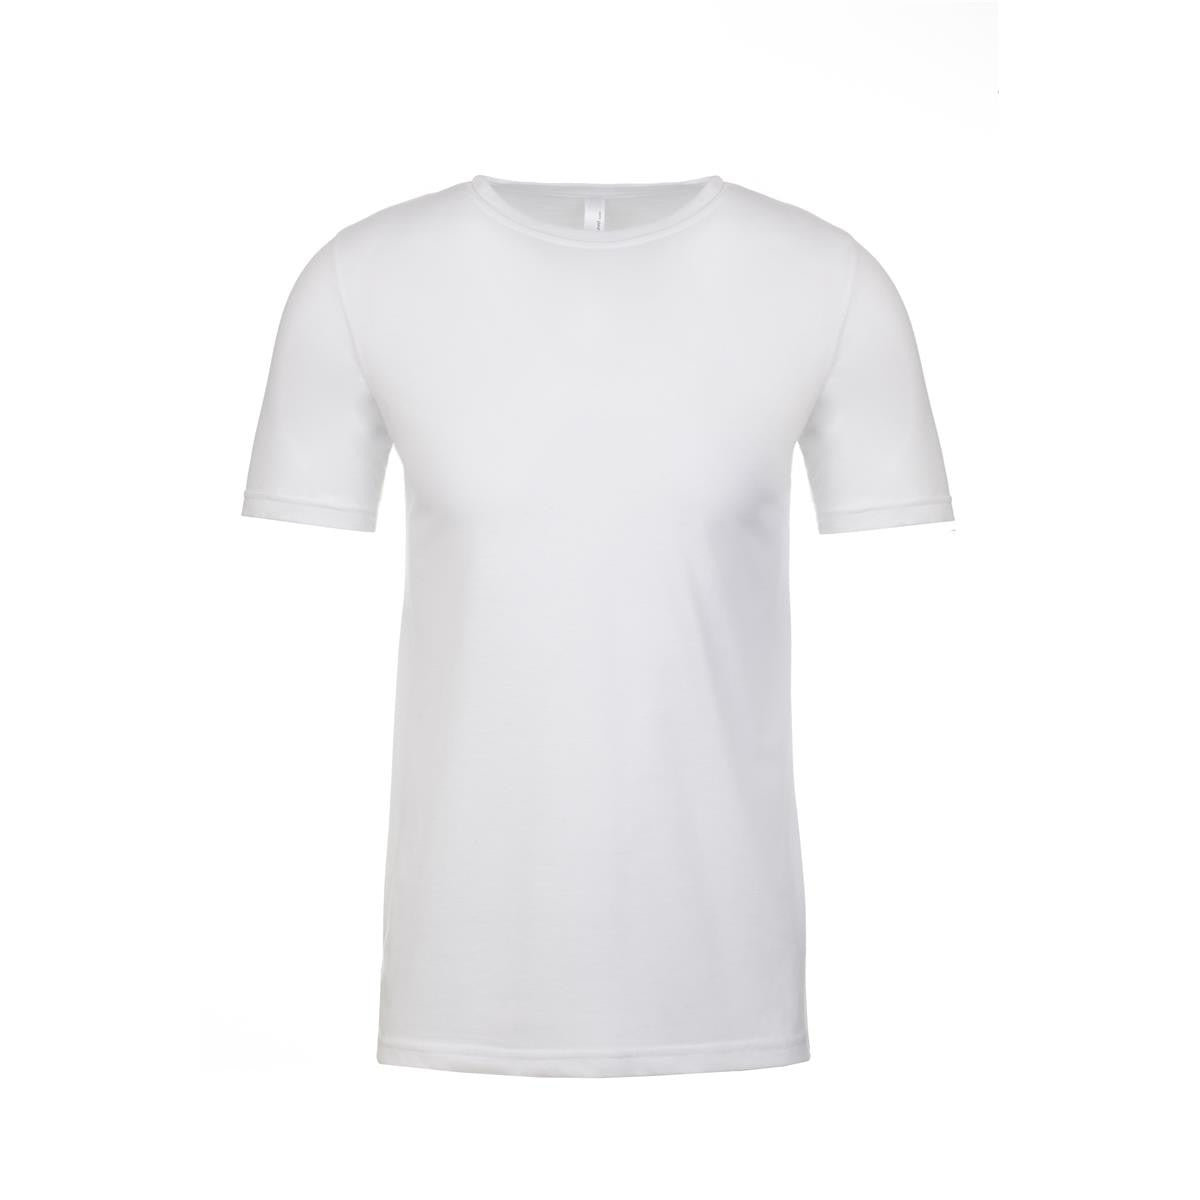 Next Level Apparel [NL6200] Men's Poly/Cotton Crew-neck T-shirt